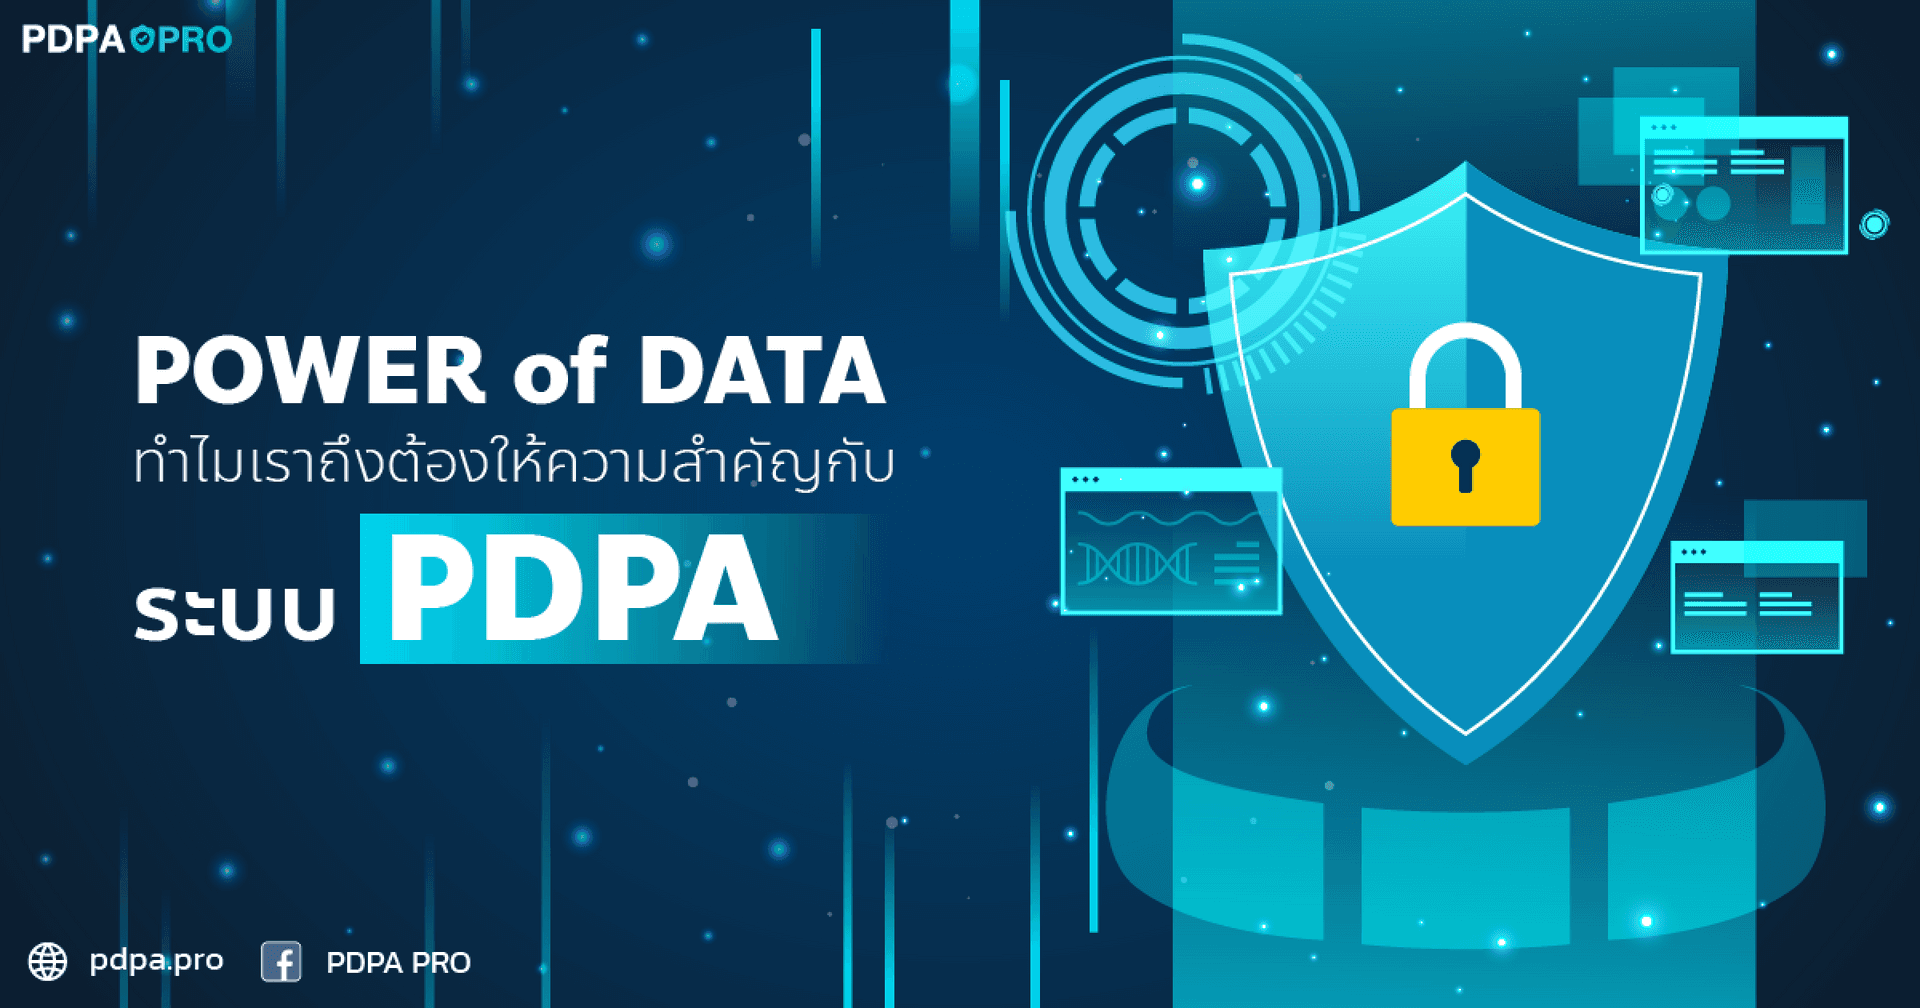 POWER of DATA: ระบบ PDPA ส่งผลต่อธุรกิจของคุณอย่างไร?